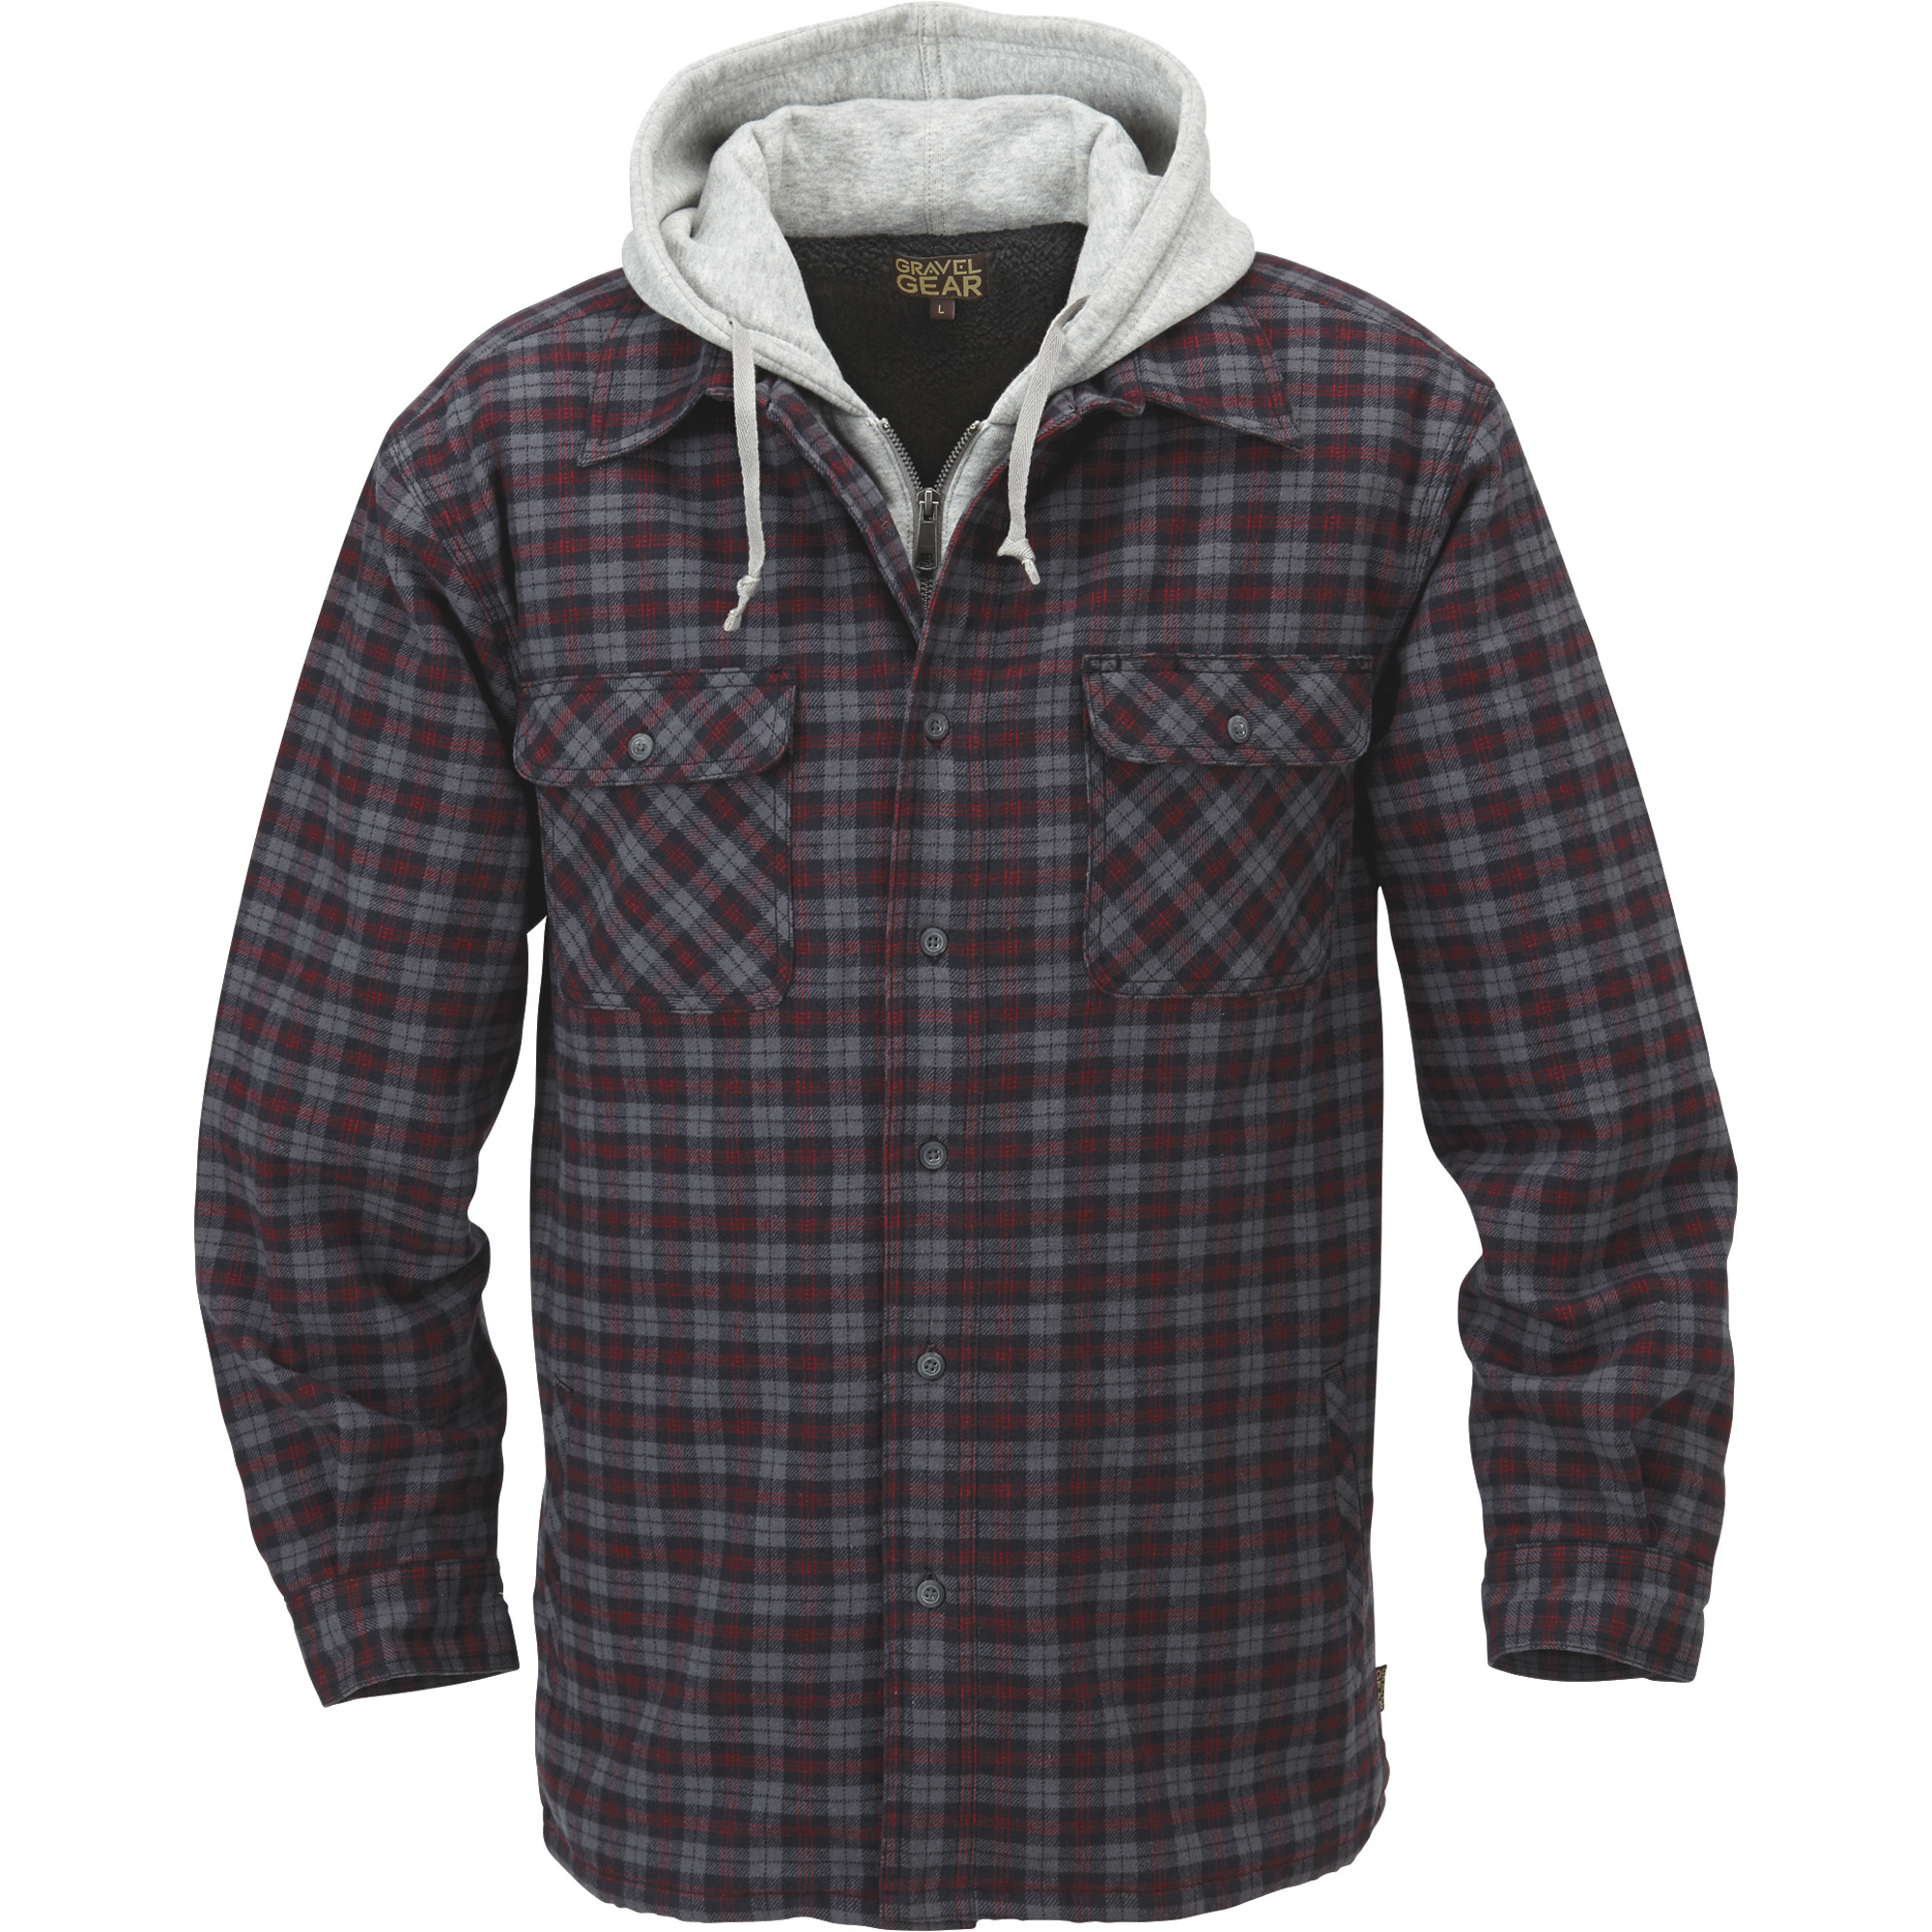 Gravel Gear Sherpa-Lined Hooded Flannel Shirt Jacket â Large, Black/Red Plaid